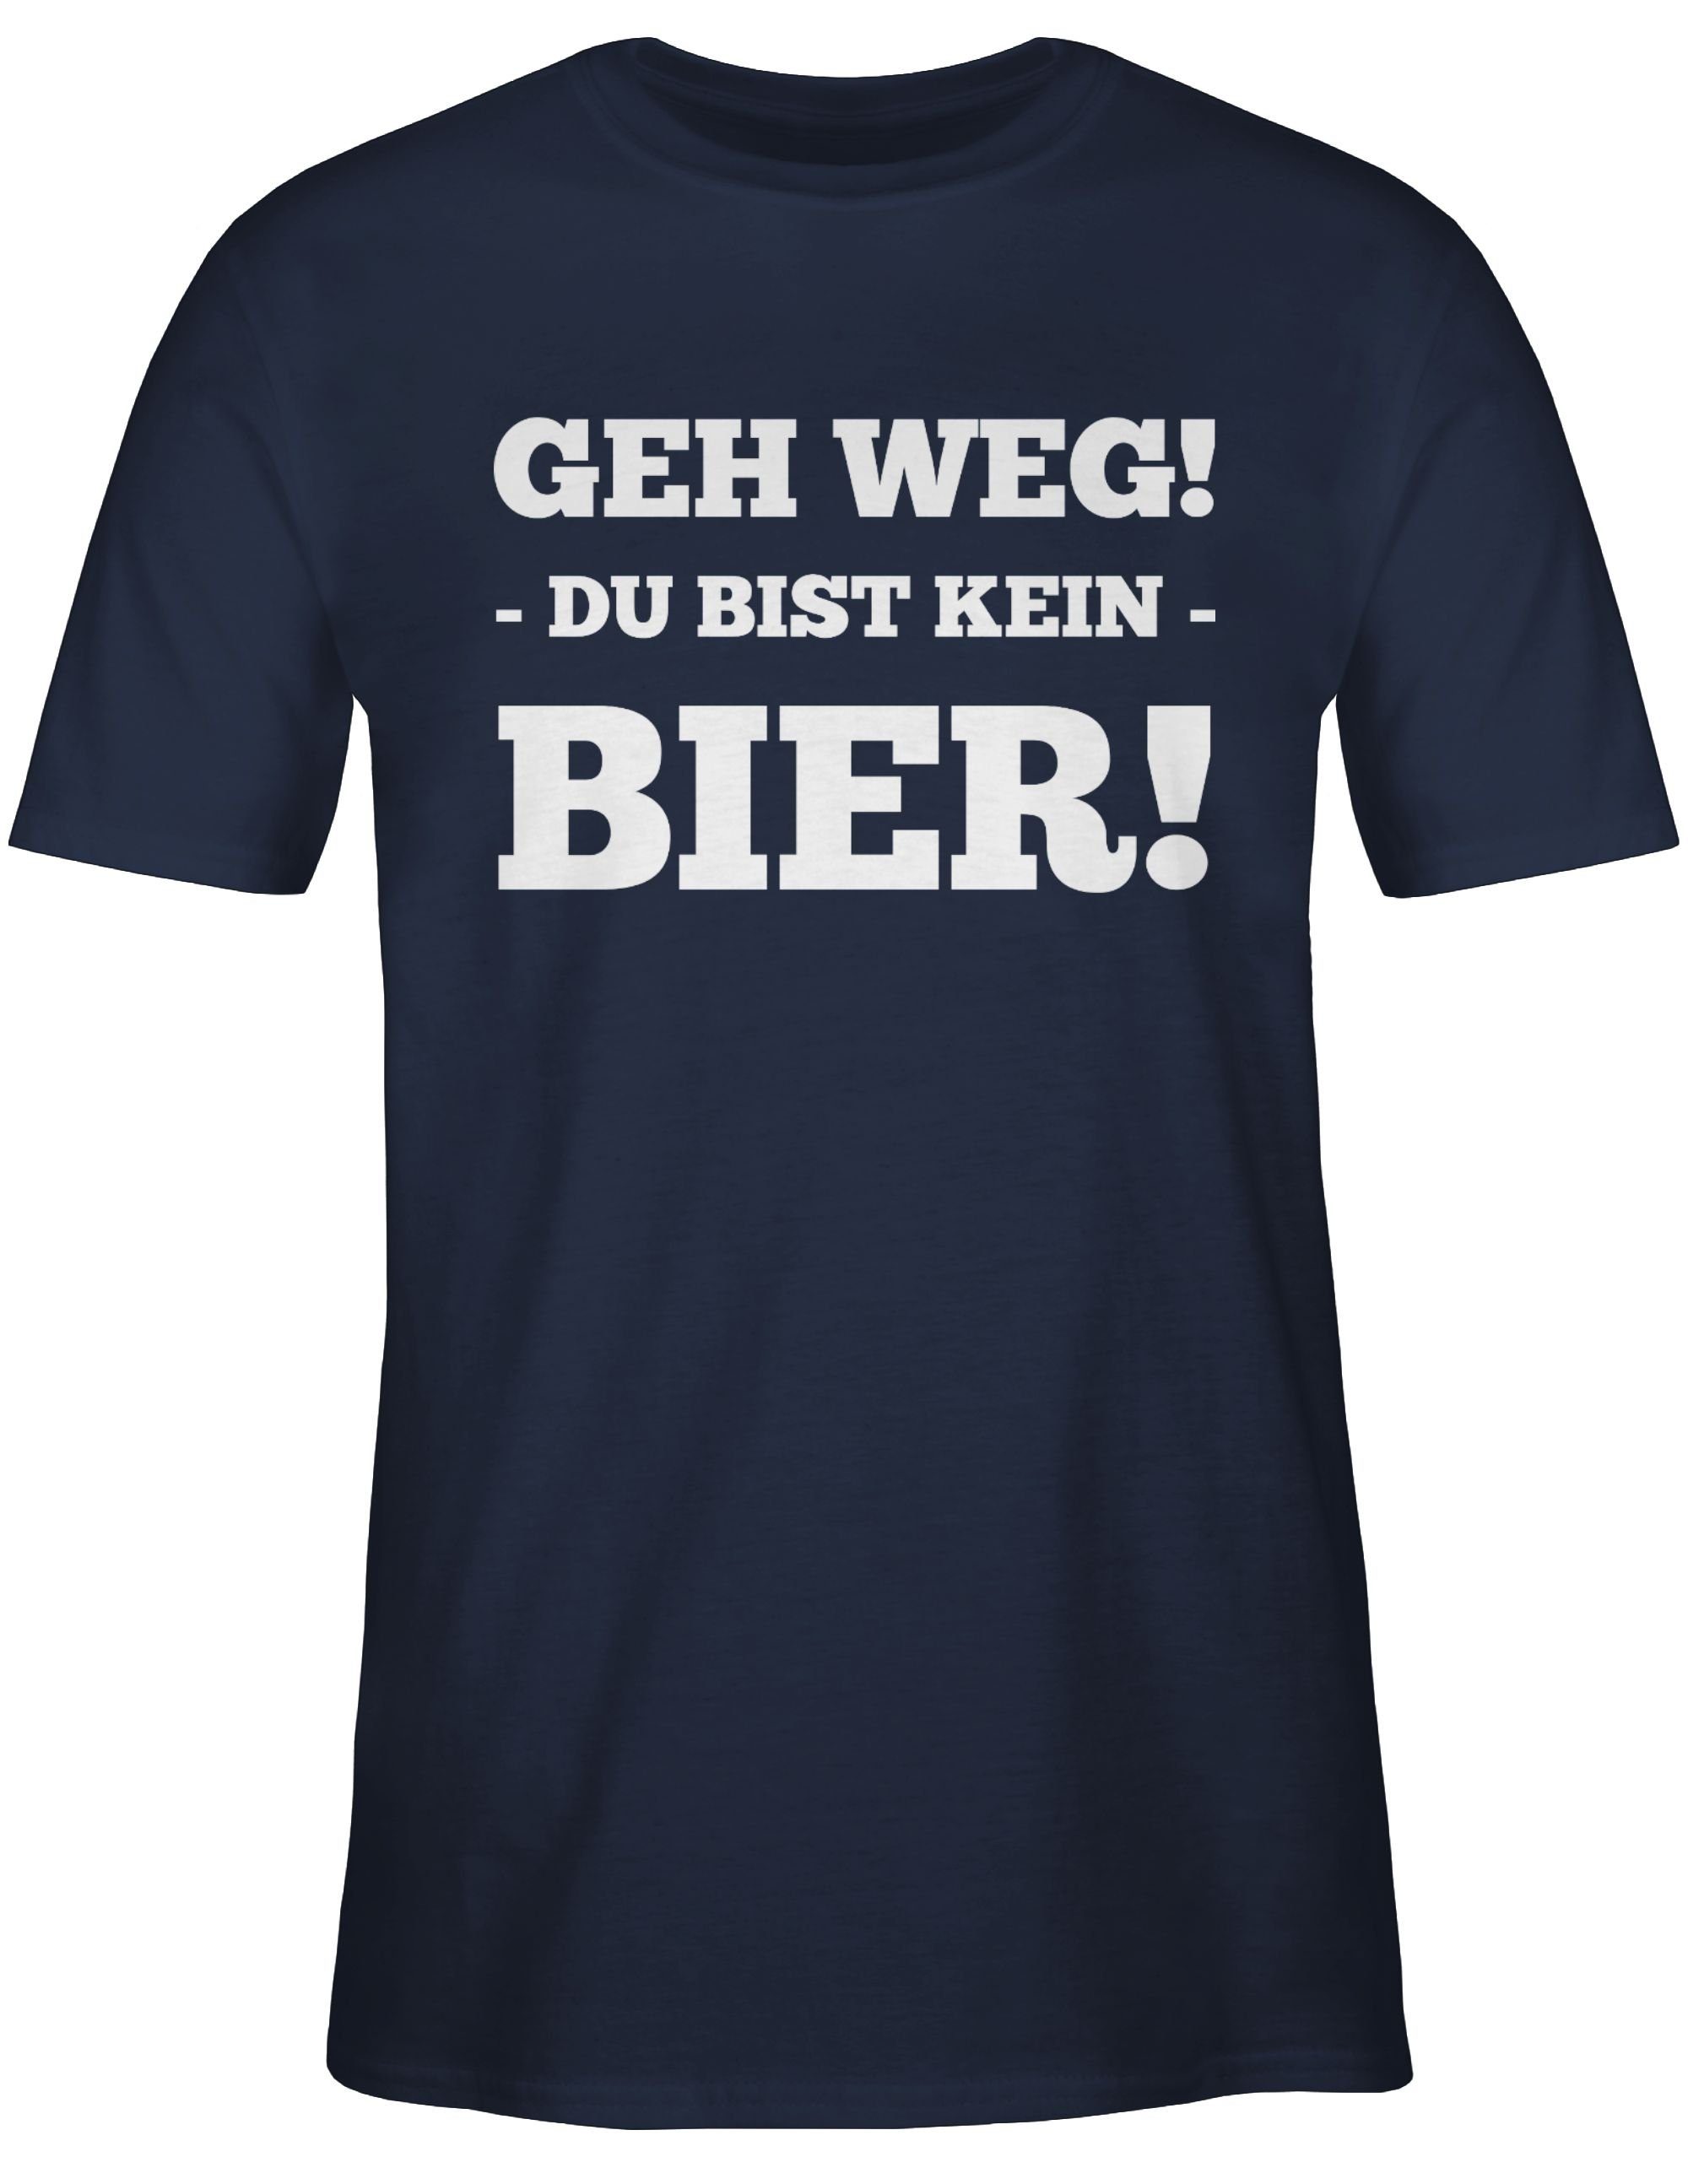 Shirtracer T-Shirt Geh Weg Spruch Sprüche kein Du Navy bist Blau Bier Statement 2 mit 